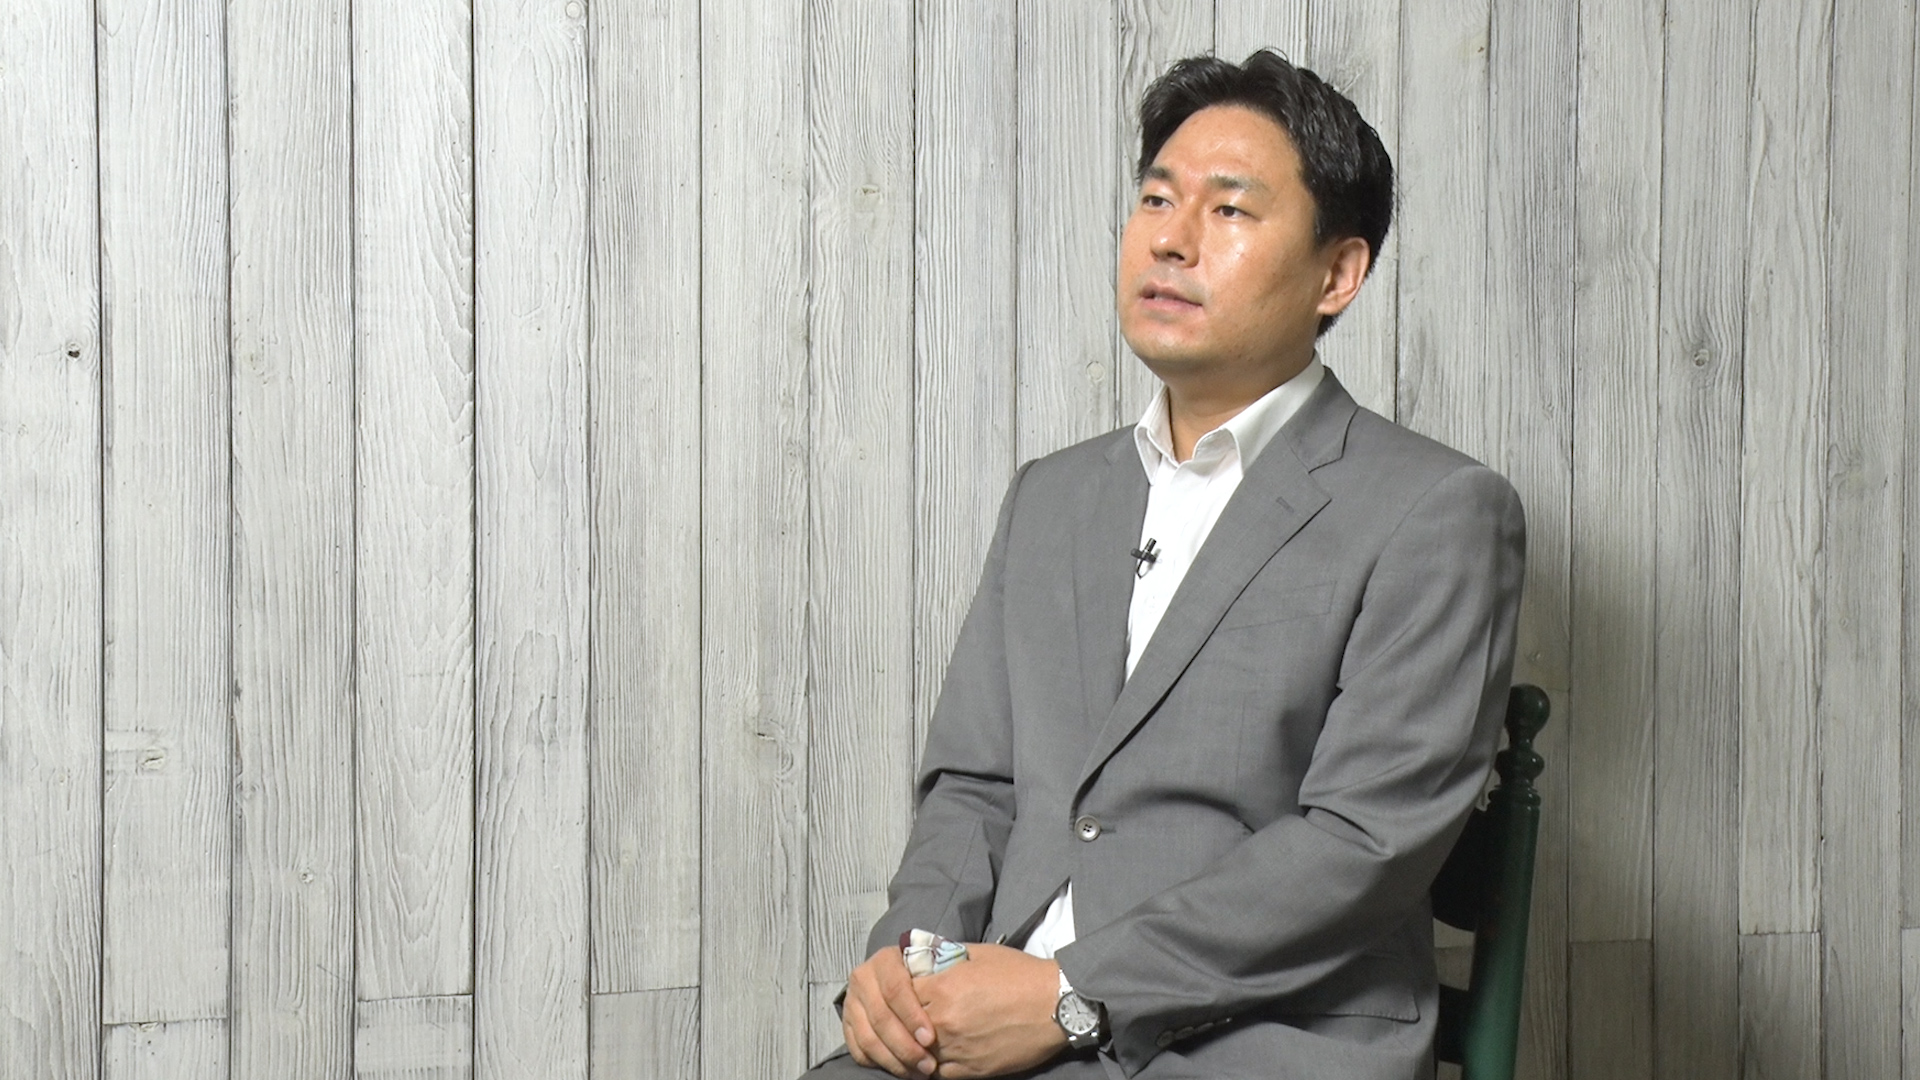 지난 18일 서울가정법원에서 가사소년 전문법관으로 근무하고 있는 신정일 판사가 서울신문과의 인터뷰에 응하고 있는 모습